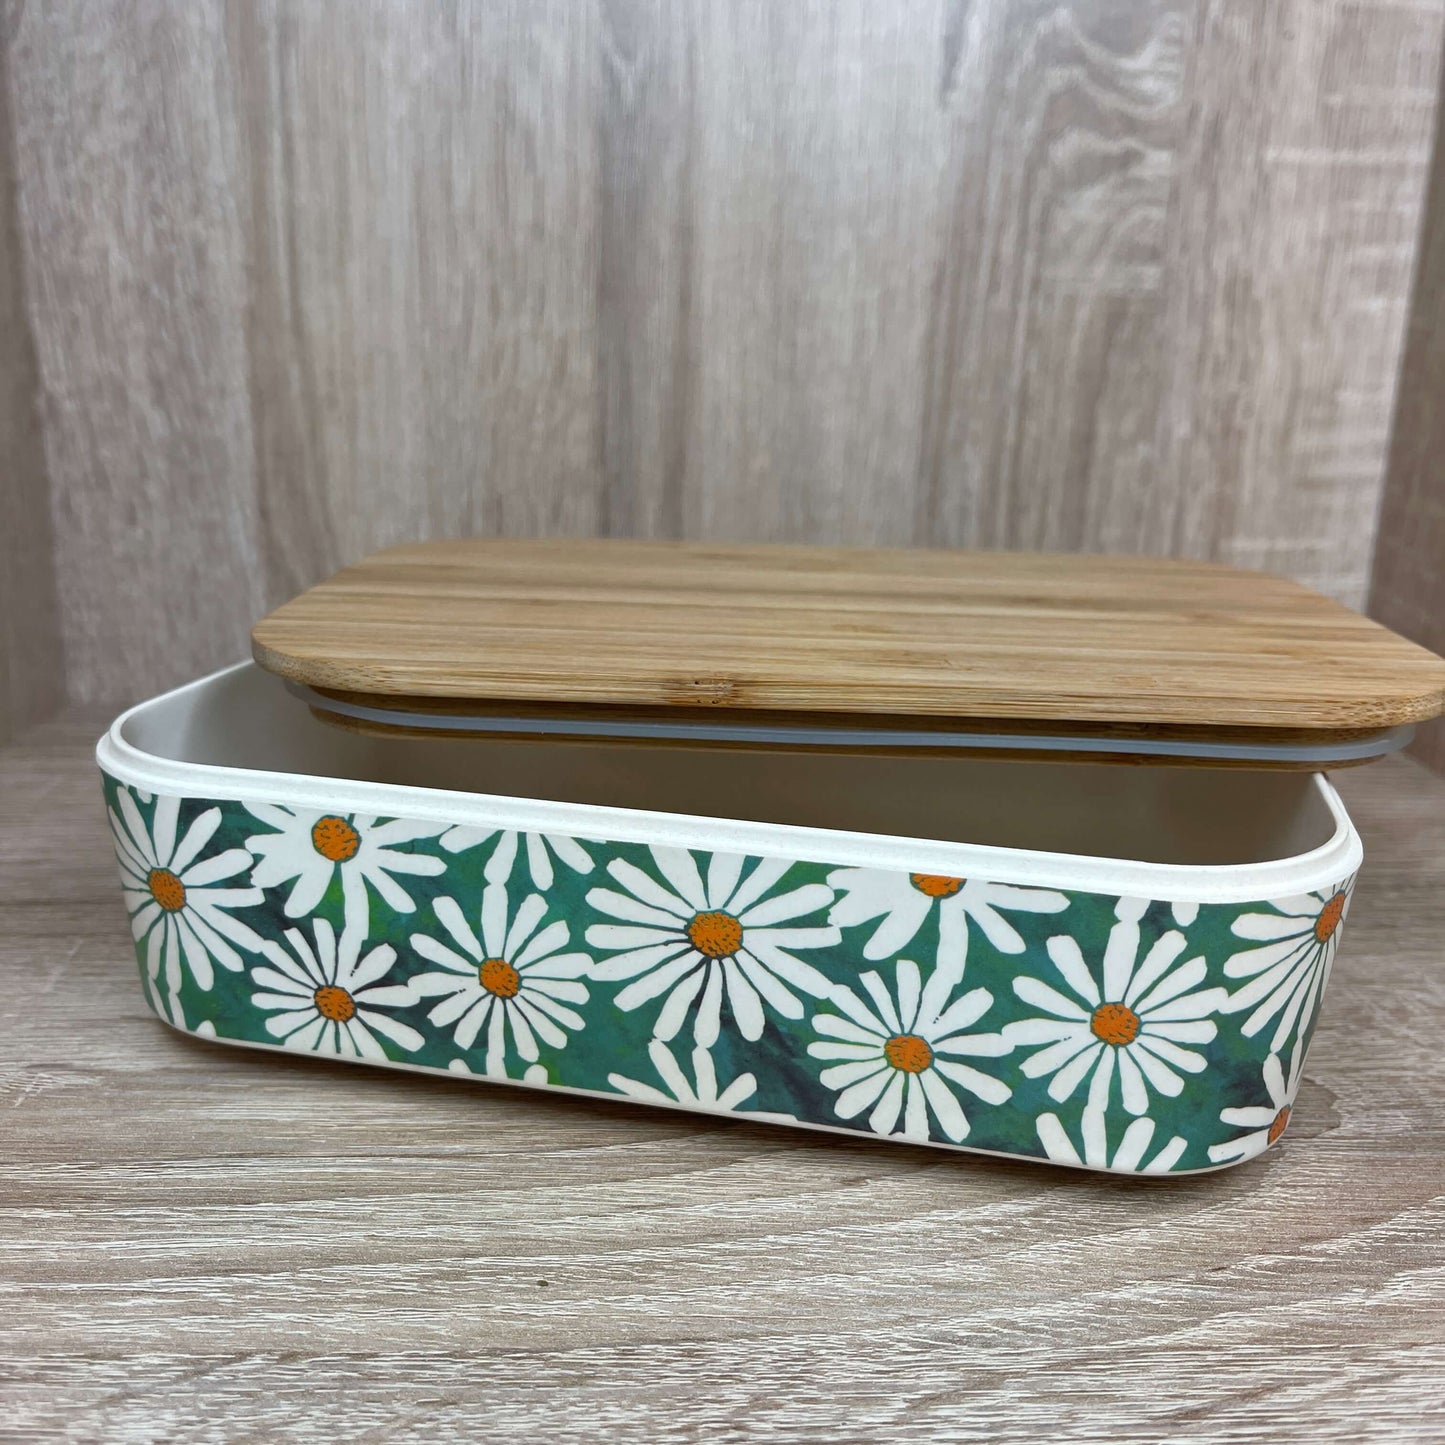 Bamboo Daisy lunch box.